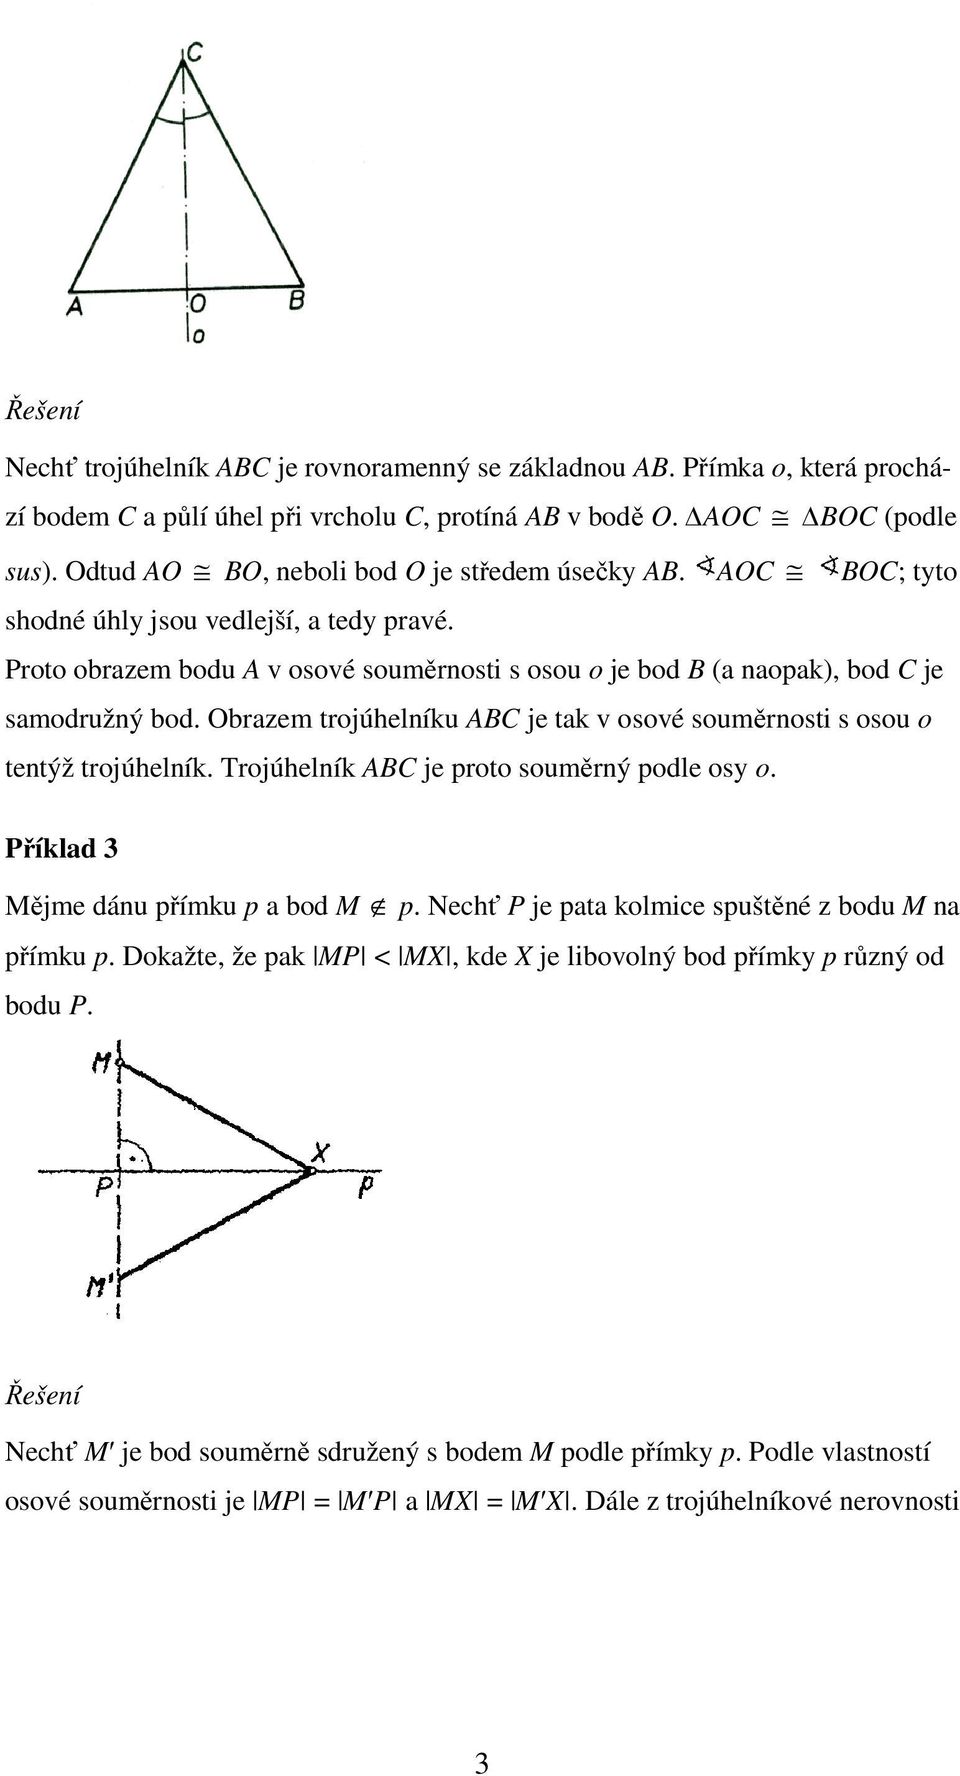 Obrazem trojúhelníku ABC je tak v osové souměrnosti s osou o tentýž trojúhelník. Trojúhelník ABC je proto souměrný podle osy o. Příklad 3 Mějme dánu přímku p a bod M p.